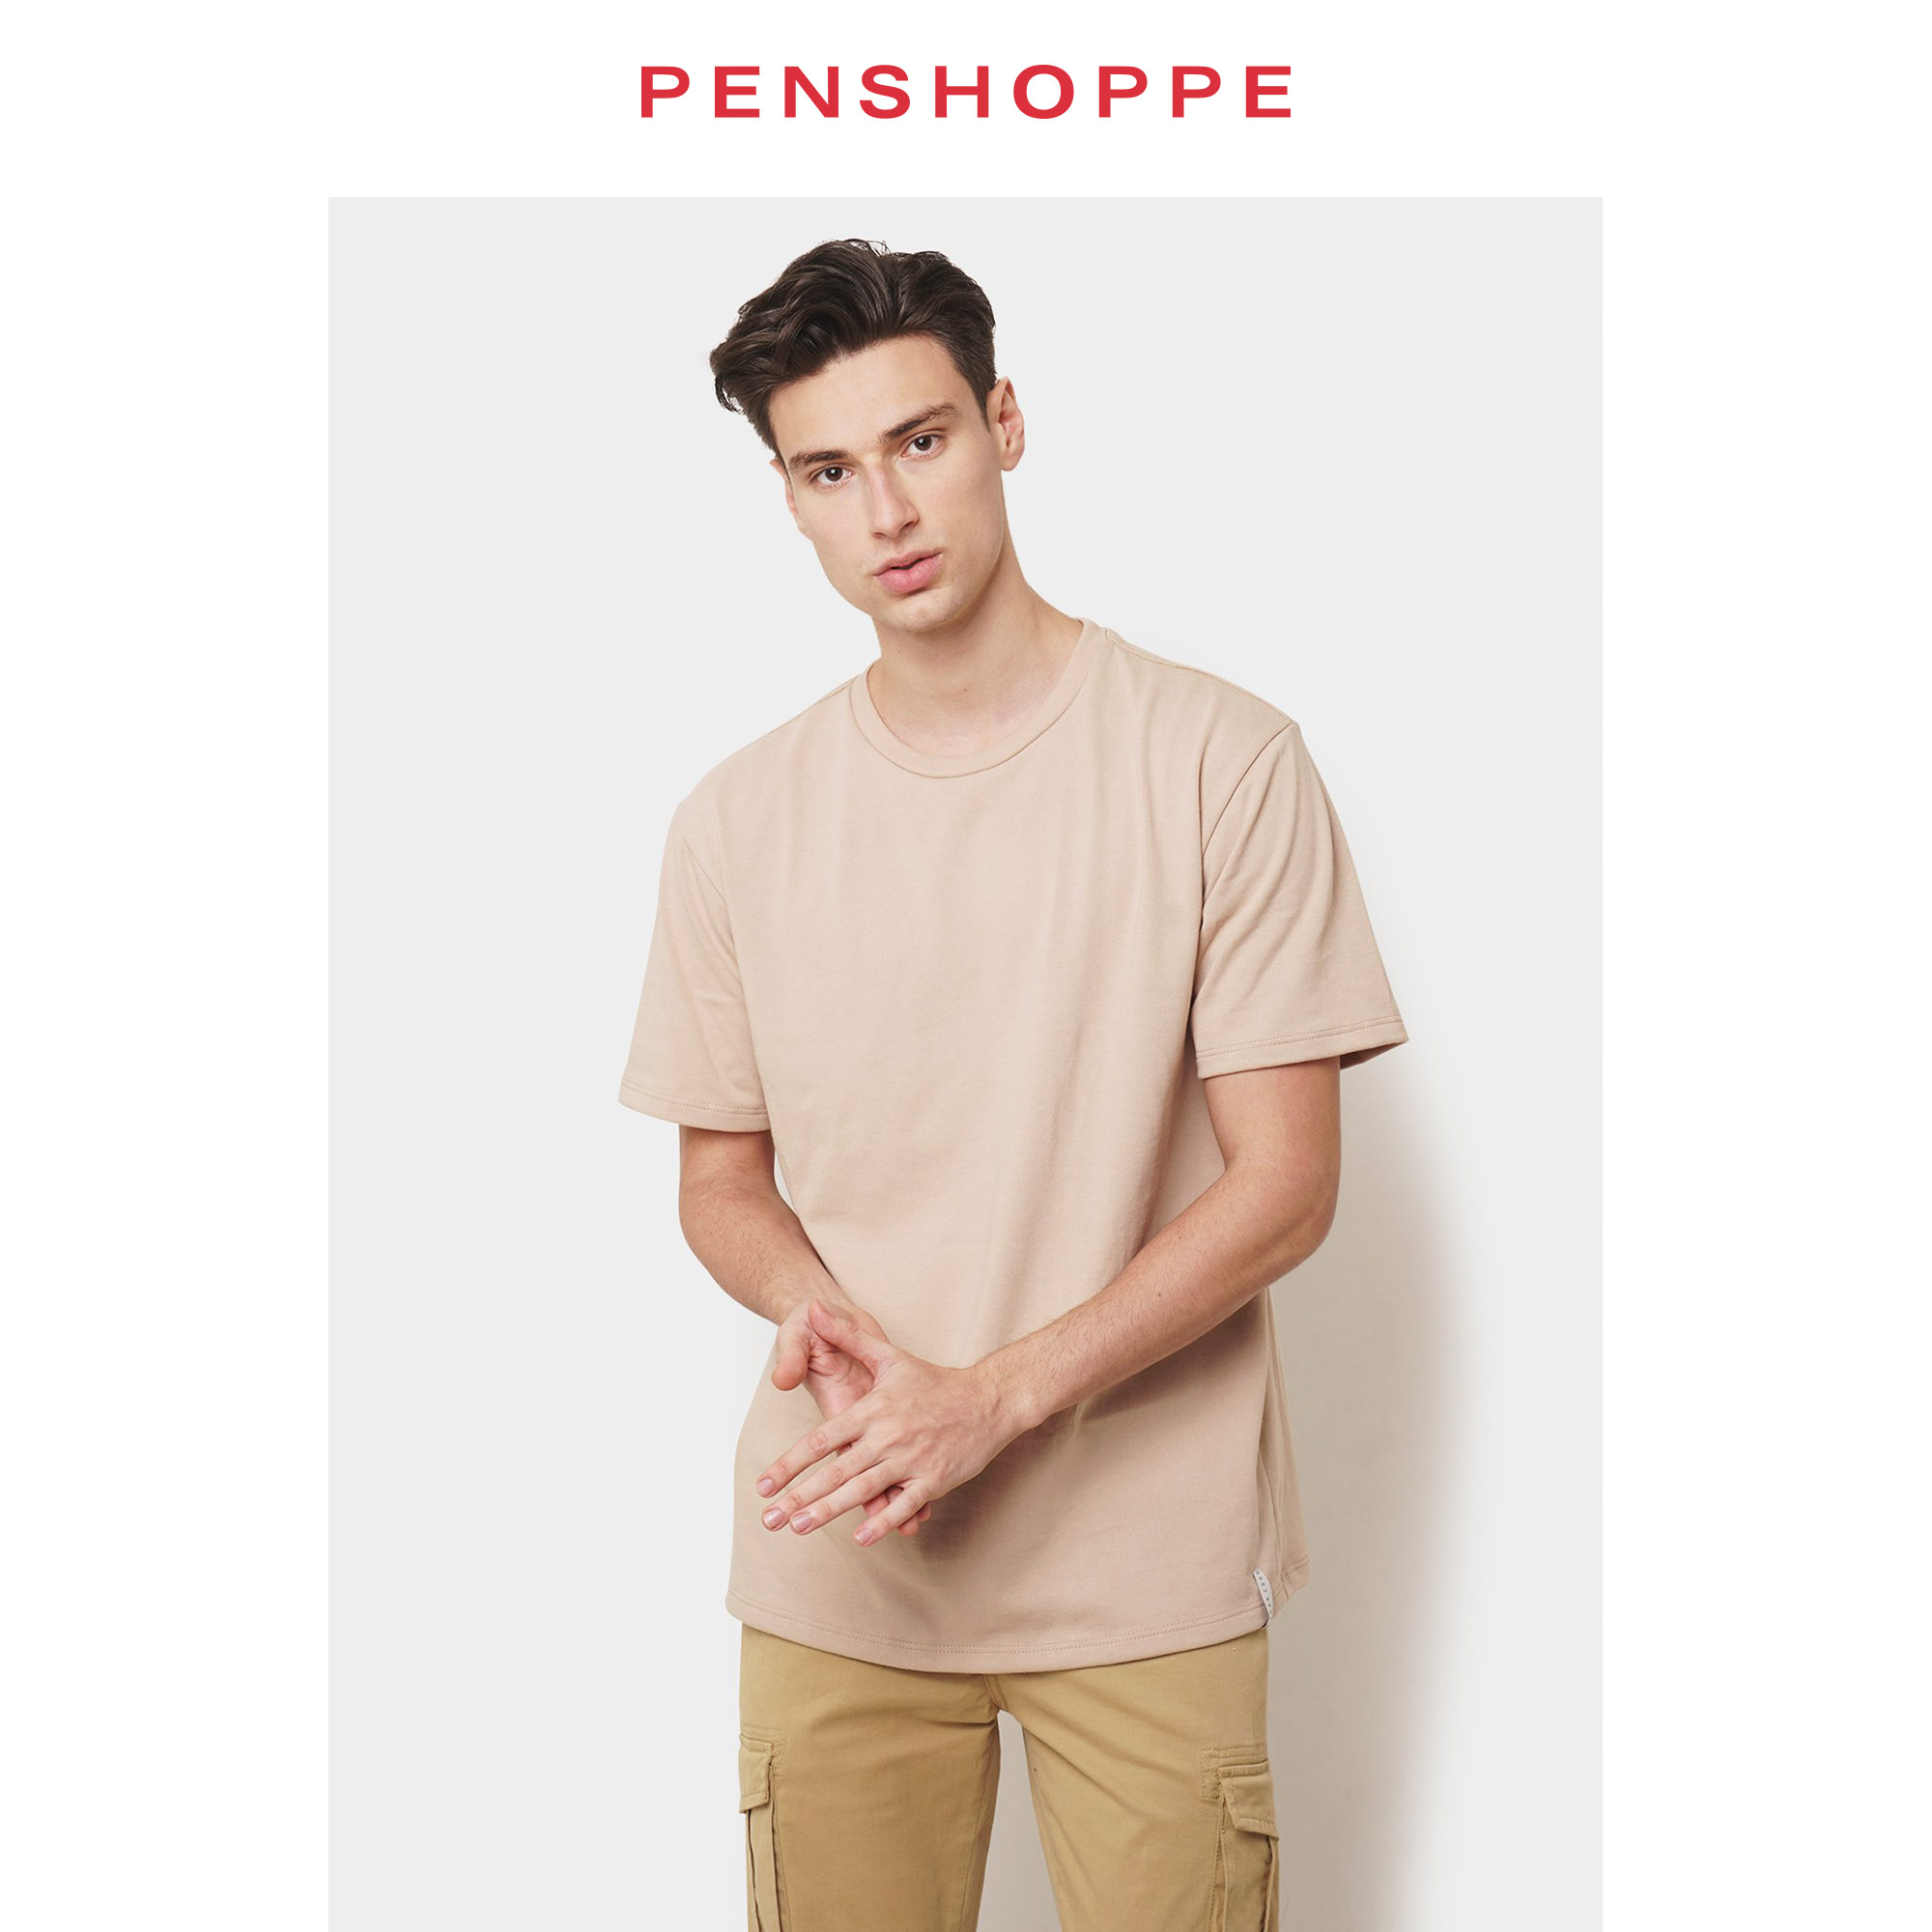 penshoppe plain black shirt